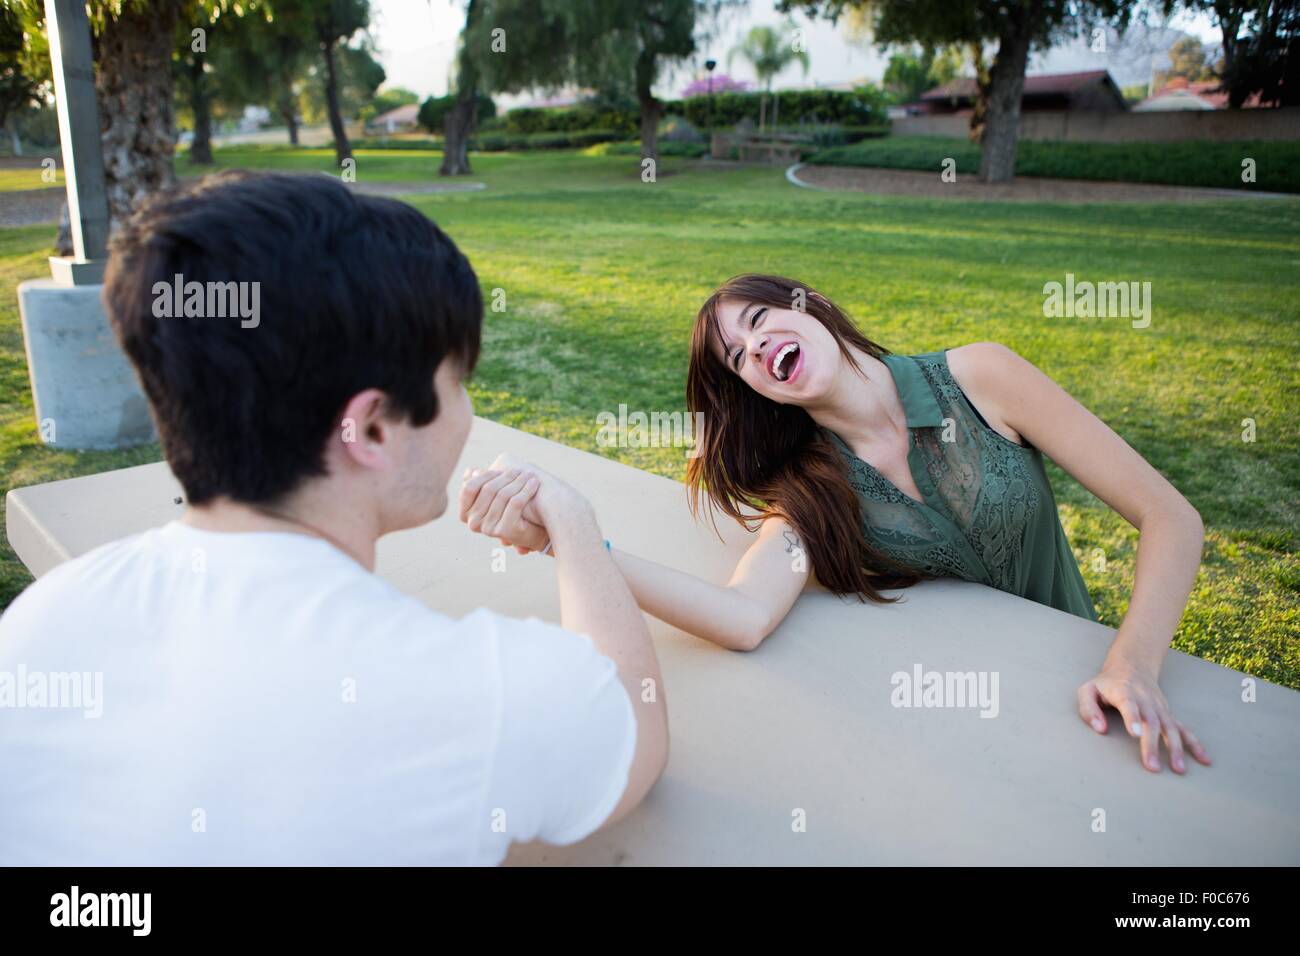 Pareja joven pretendiendo luchar a brazo en la banqueta de picnic en el parque Foto de stock